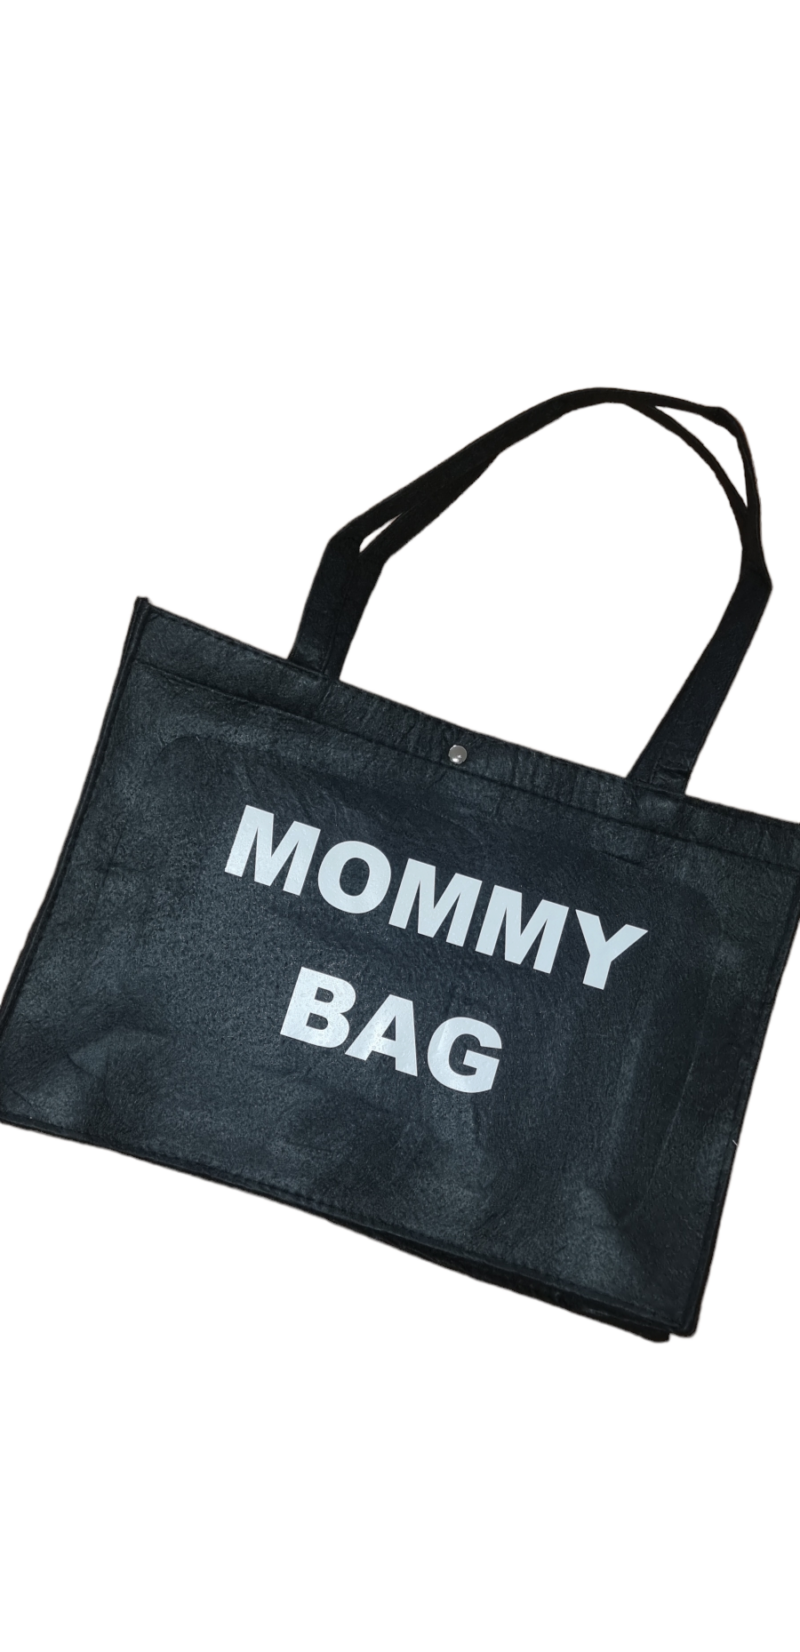 Vilten tas met opdruk mommy bag